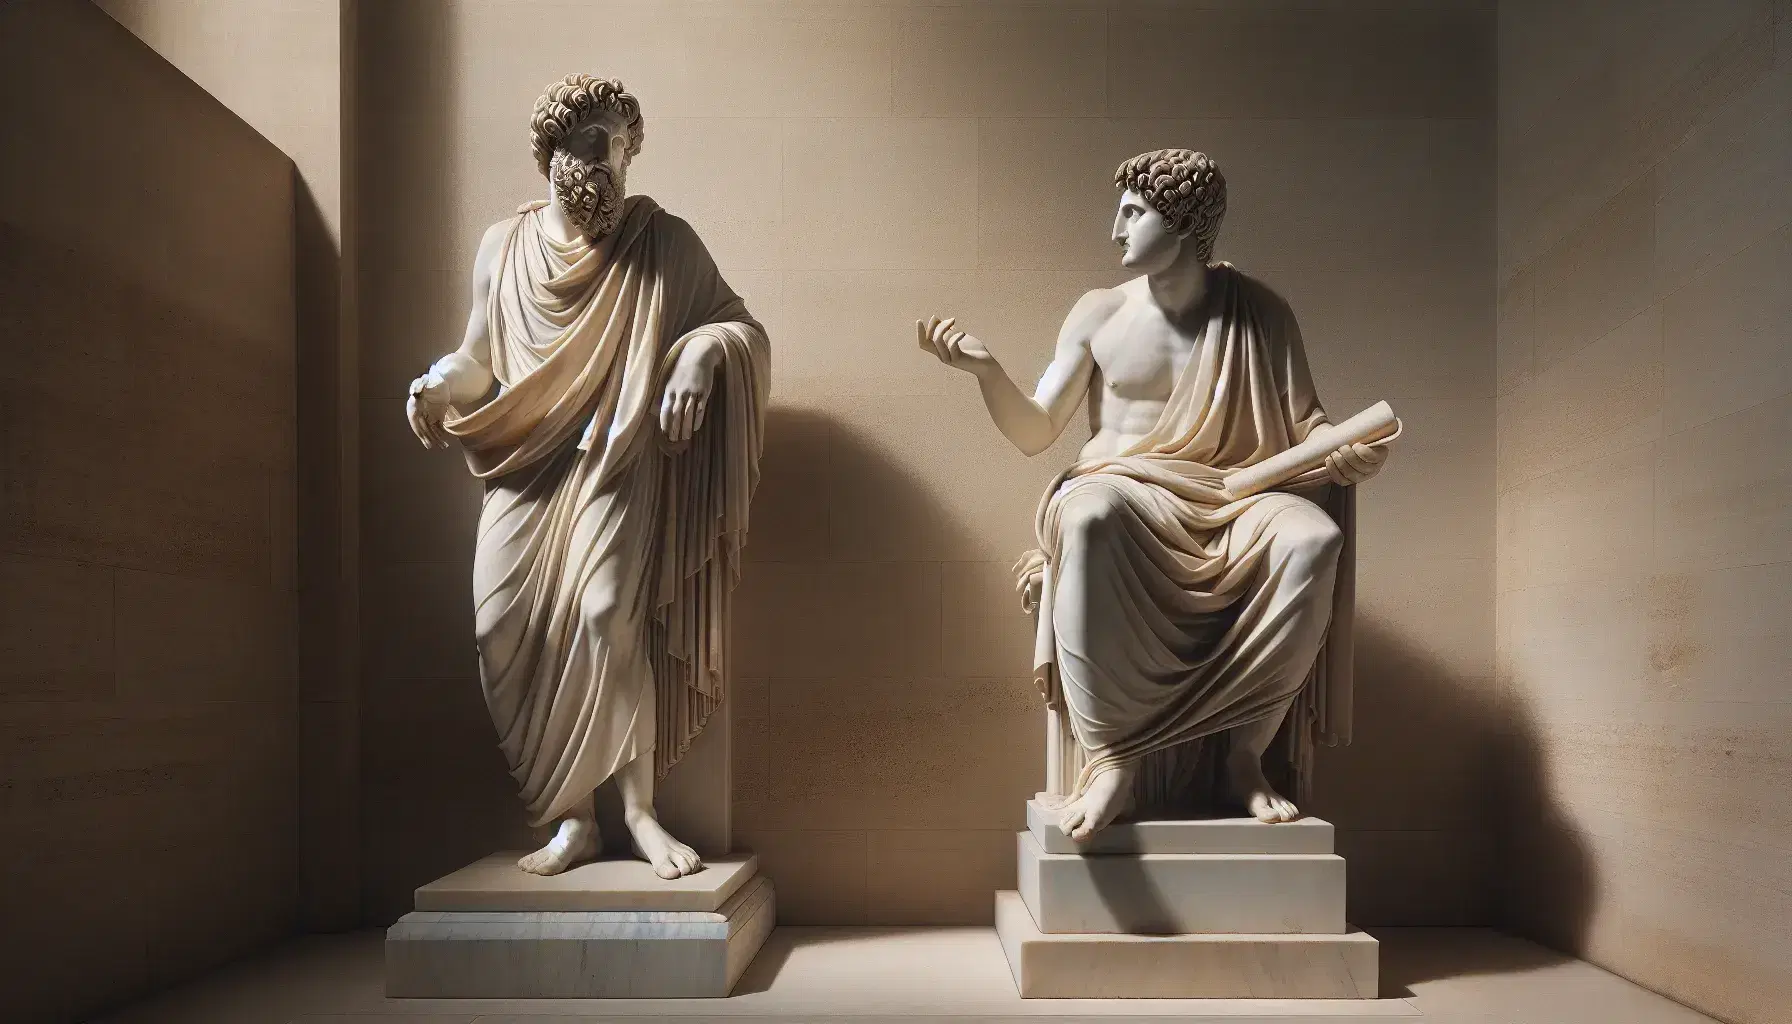 Estatuas de mármol blanco de dos hombres antiguos, uno barbudo con la mano extendida y otro joven con un rollo de papiro, bajo luz natural.